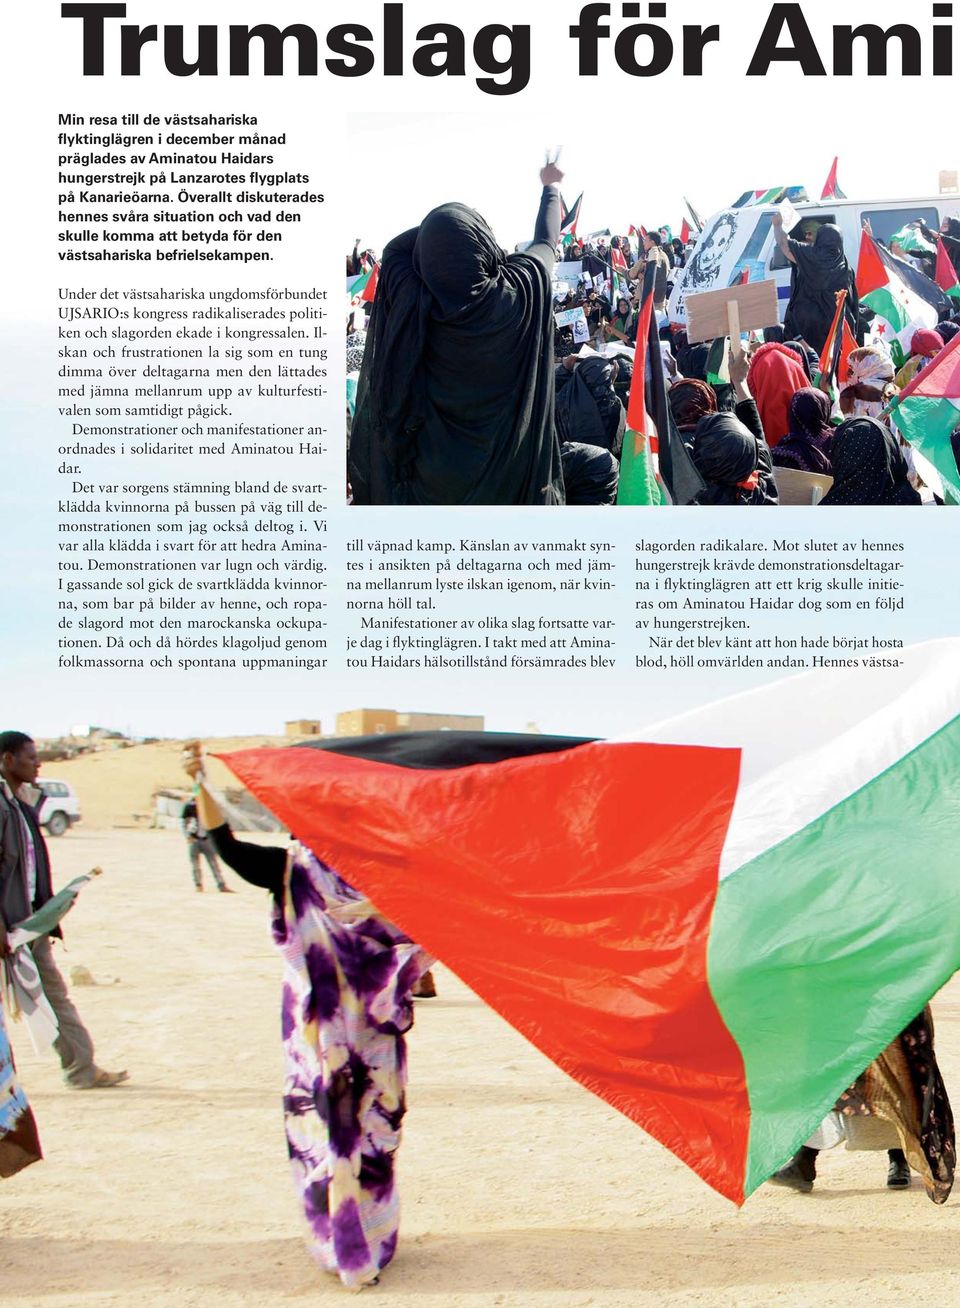 Under det västsahariska ungdomsförbundet UJSARIO:s kongress radikaliserades politiken och slagorden ekade i kongressalen.